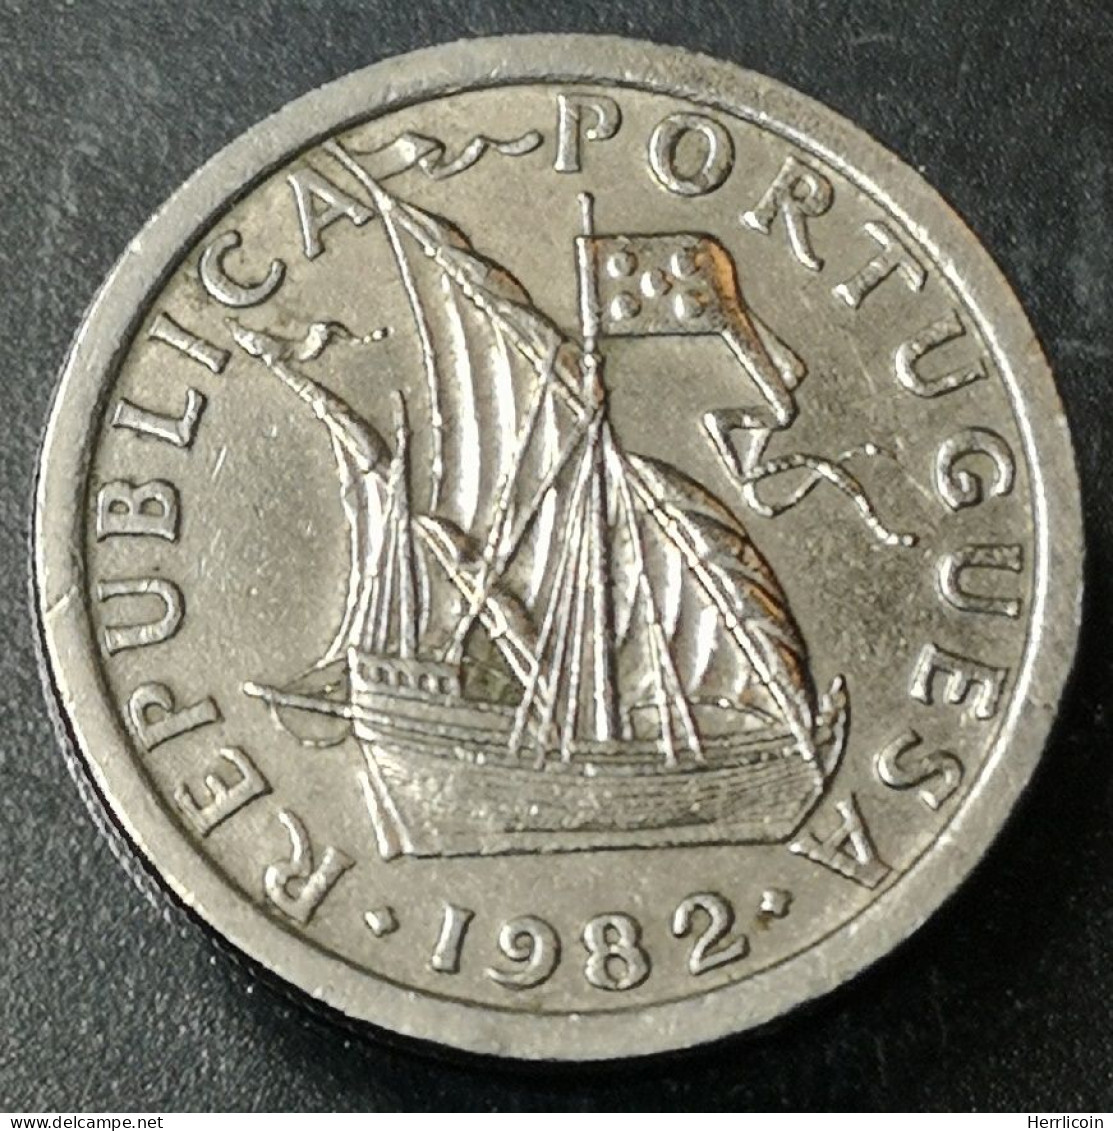 Monnaie Portugal - 1982 - 2.50 Escudos - Portugal